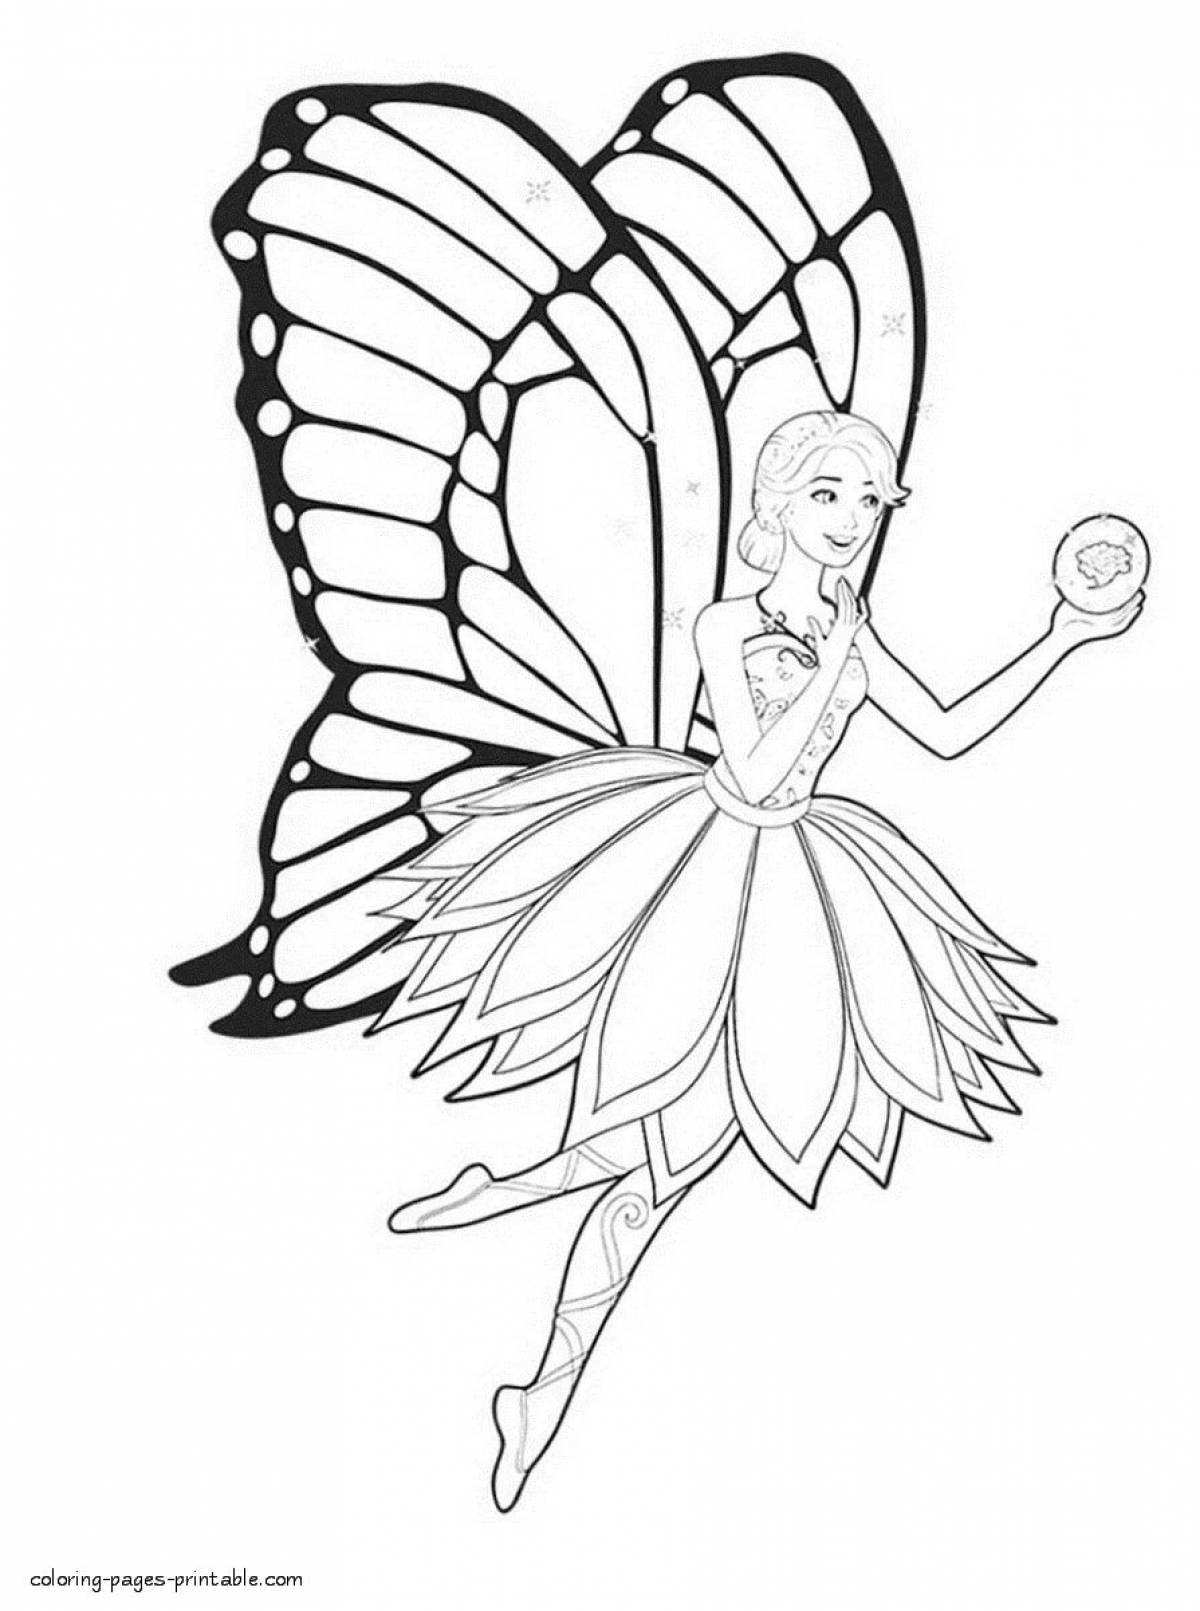 Раскраски Бабочек - распечатать в формате А4 | Раскраски, Принцесса раскраски, Шаблон бабочка